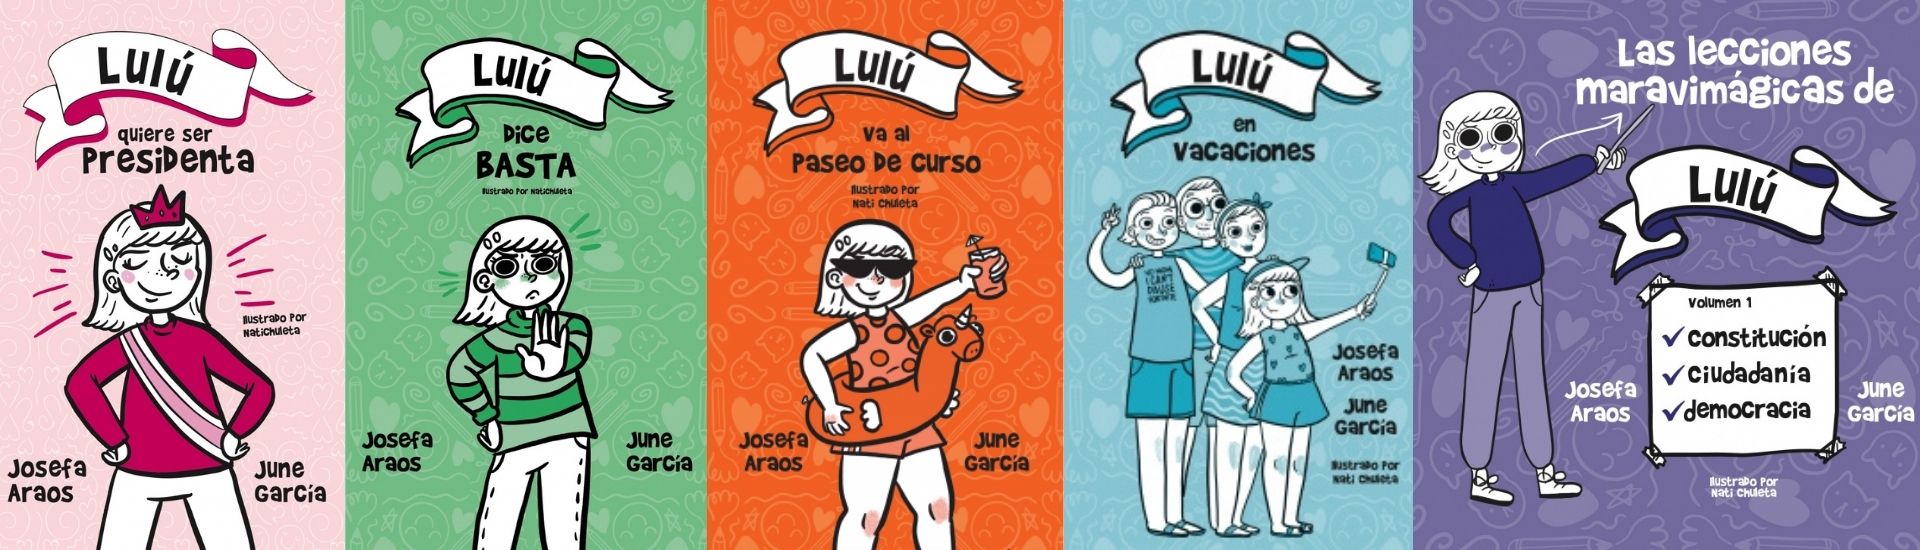 El mundo de Lulú, en la imagen se ven 5 ejemplares de la saga en todos rosados, verdes, naranjo, celeste y morado; de izquierda a derecha